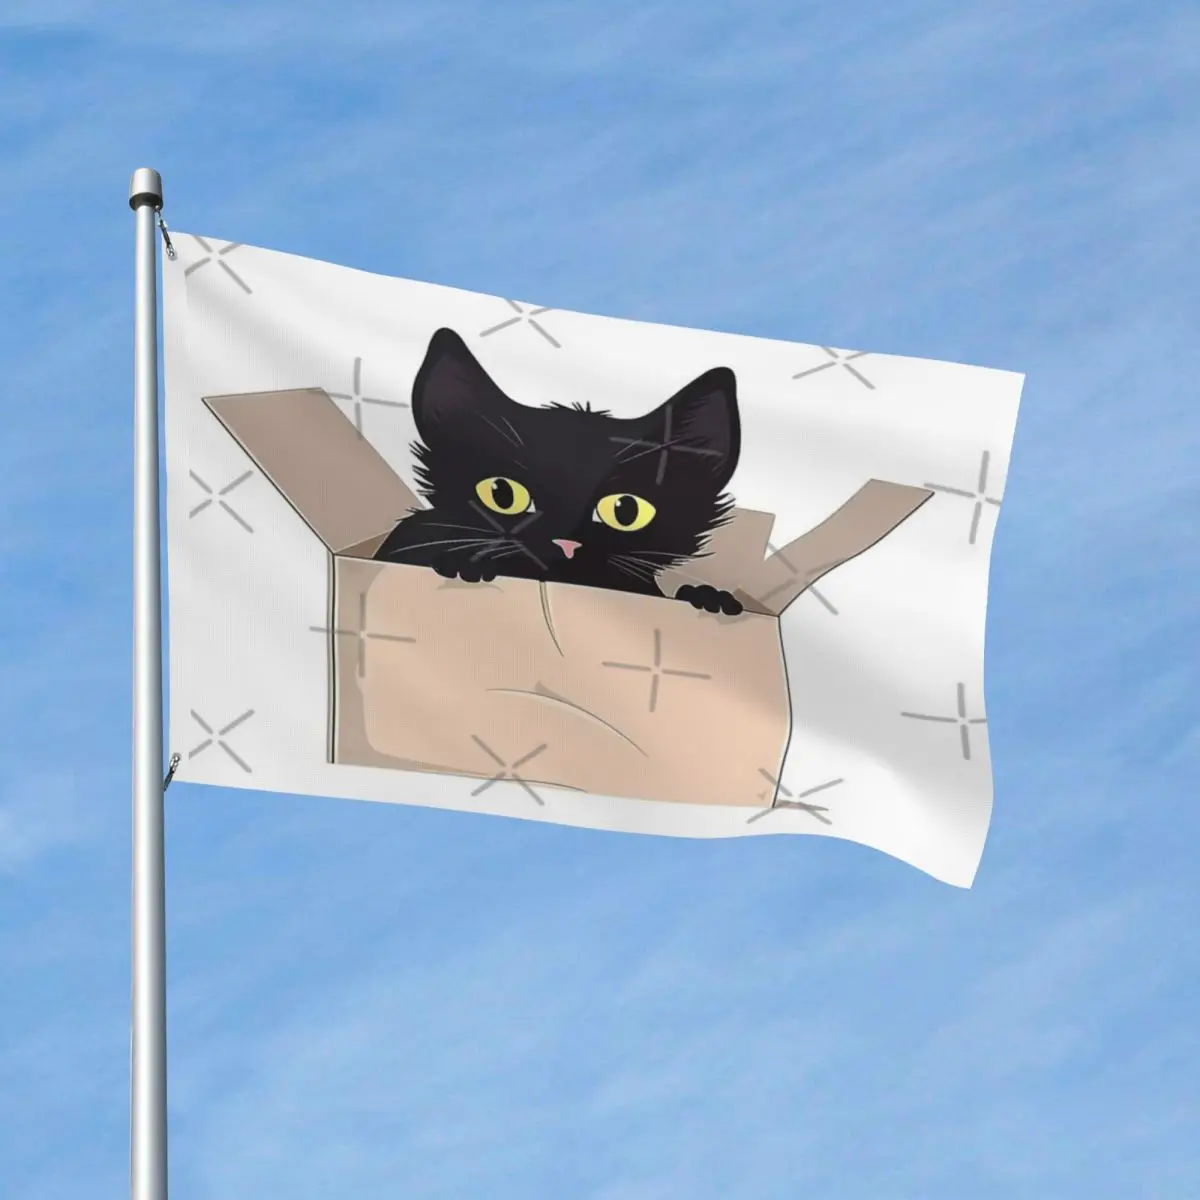 

Черный кот прячется в коробке фотообои современные декоративные яркие цвета мягкая ткань легкий без запаха настраиваемый